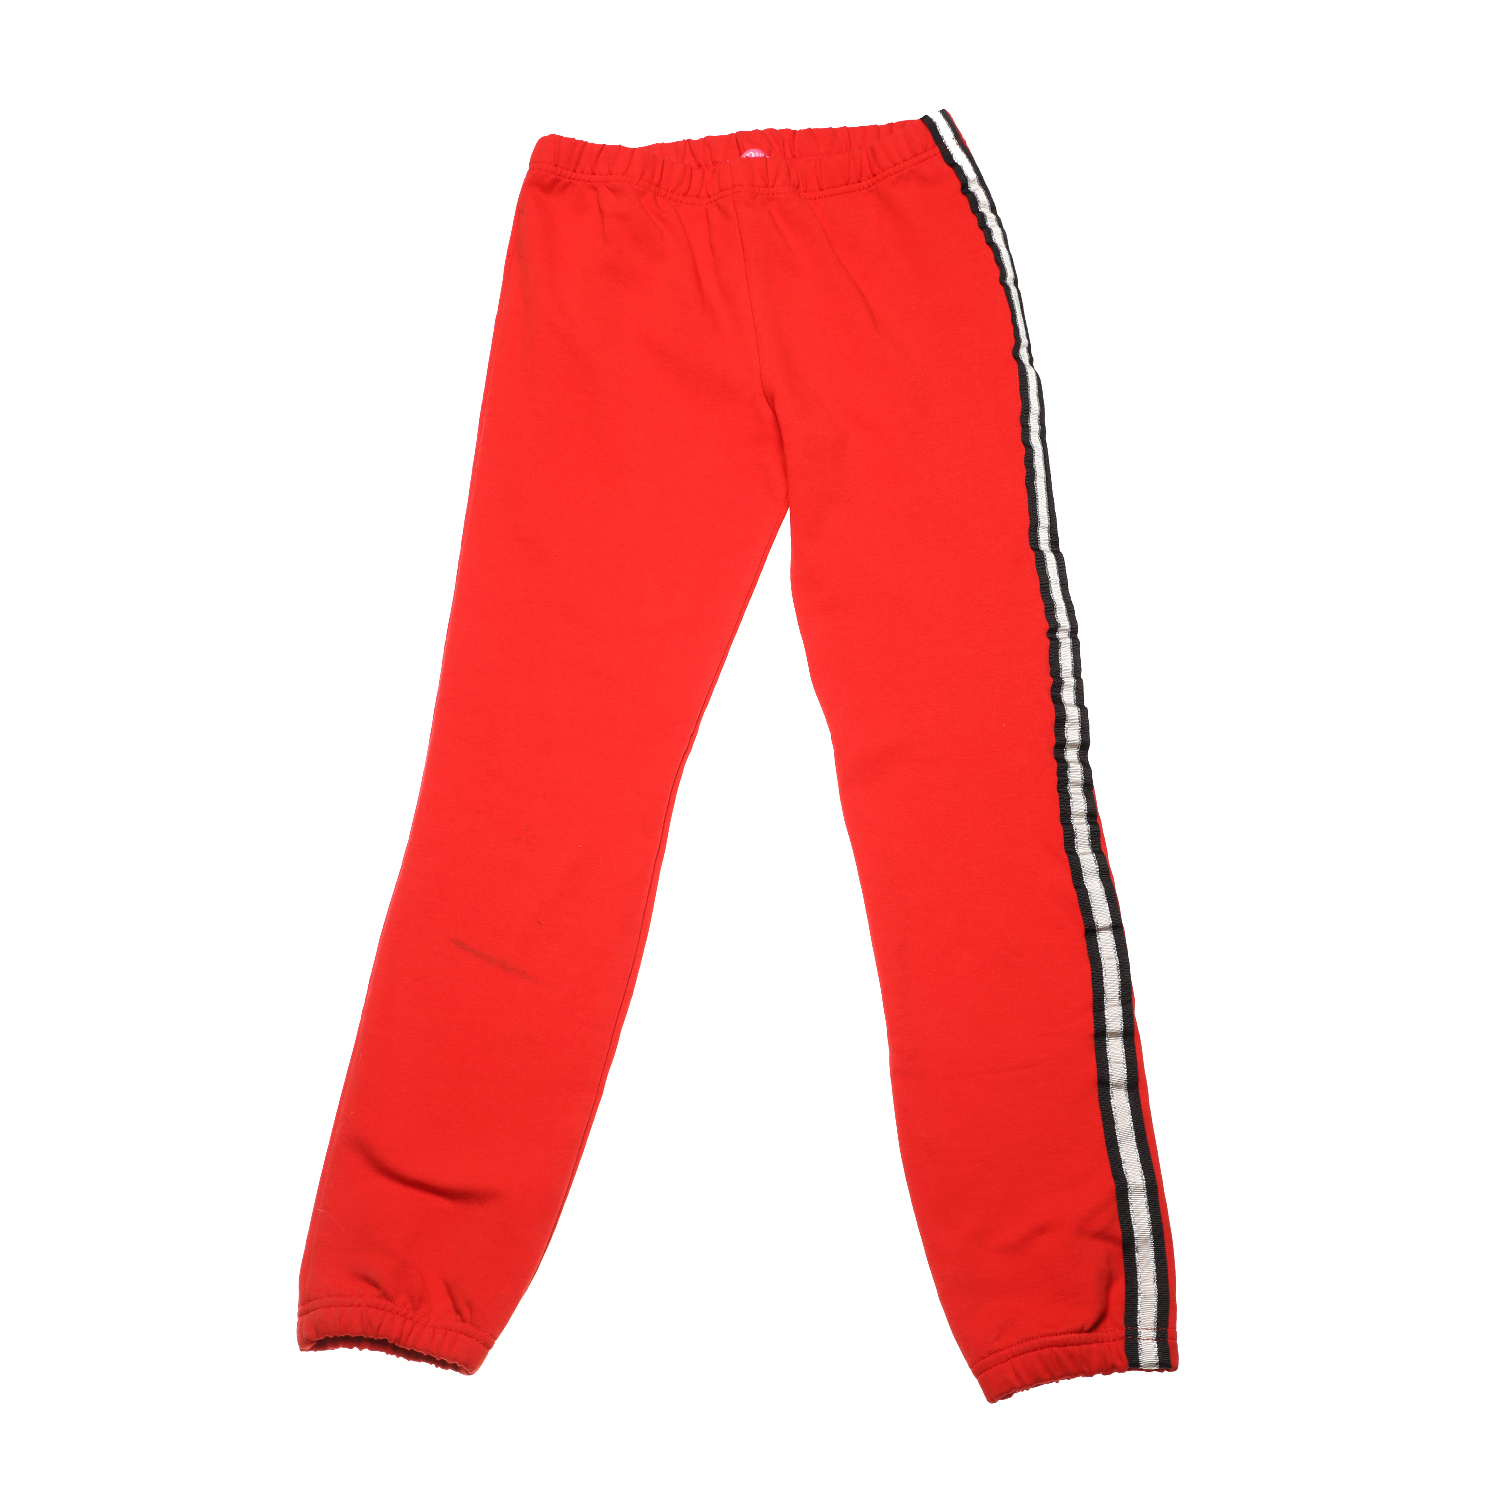 Παιδικά/Girls/Ρούχα/Παντελόνια SAM 0-13 - Παιδικό παντελόνι φόρμας SAM 0-13 κόκκινο ασημί